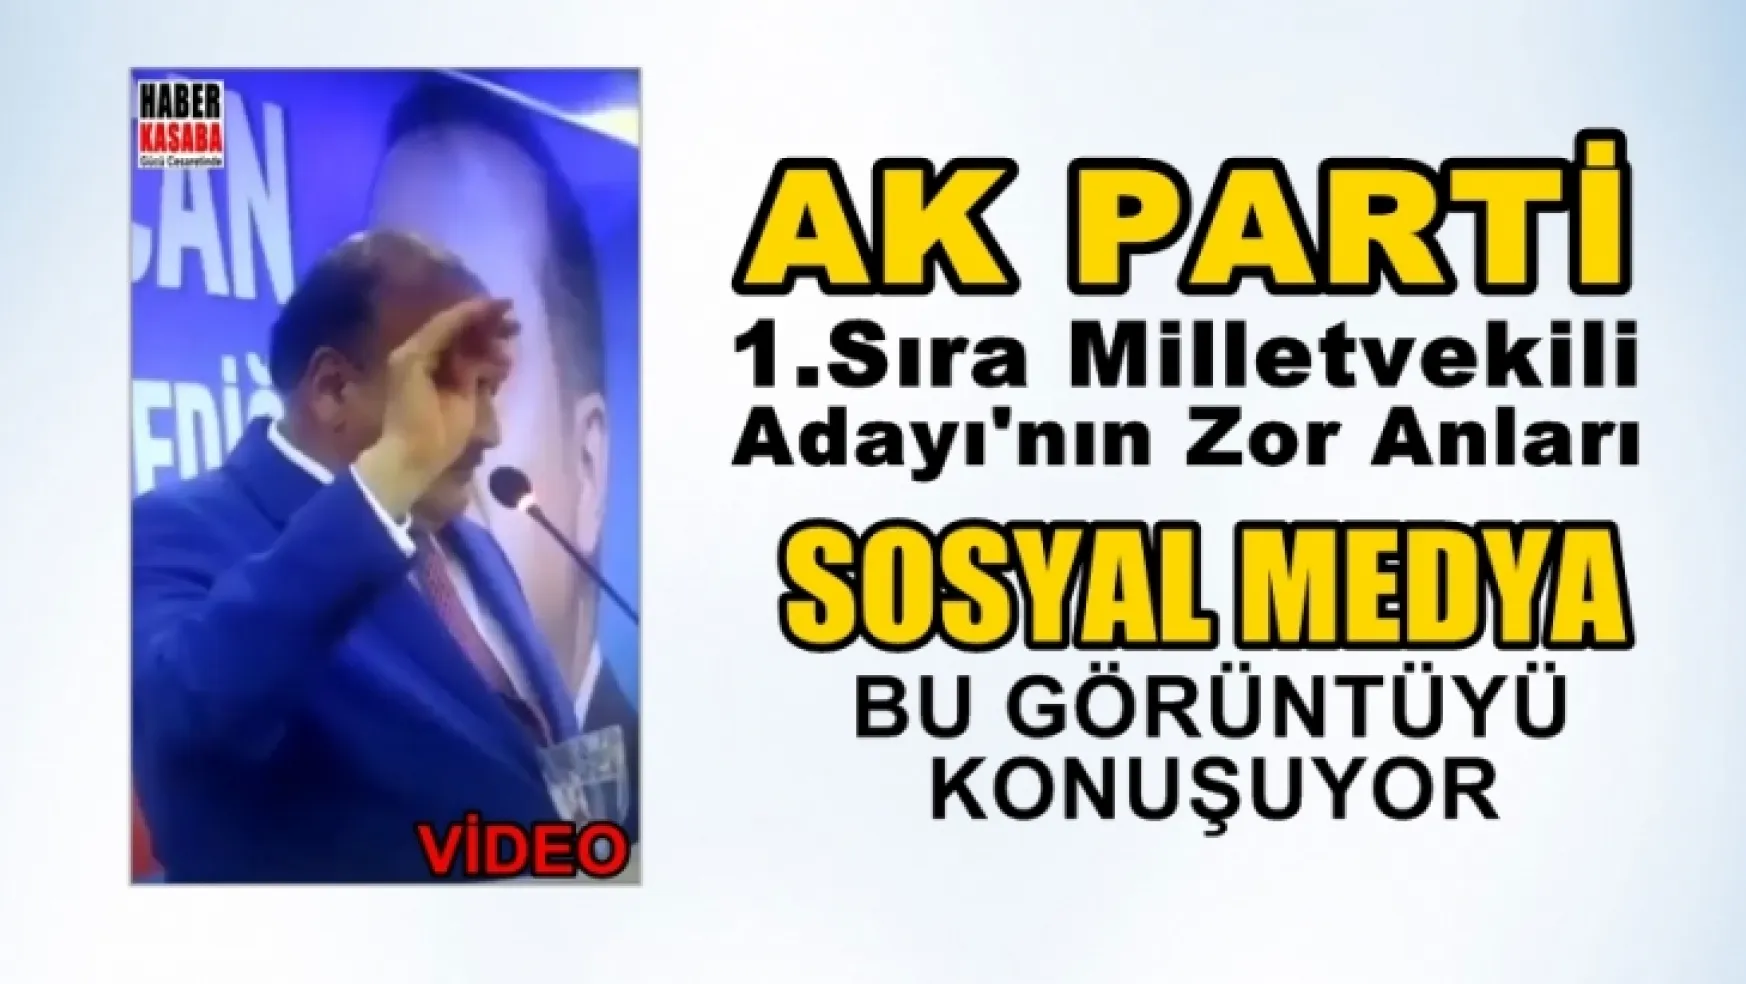 AK Parti'nin 1.sıra Milletvekili adayının bu görüntüleri sosyal medyayı salladı